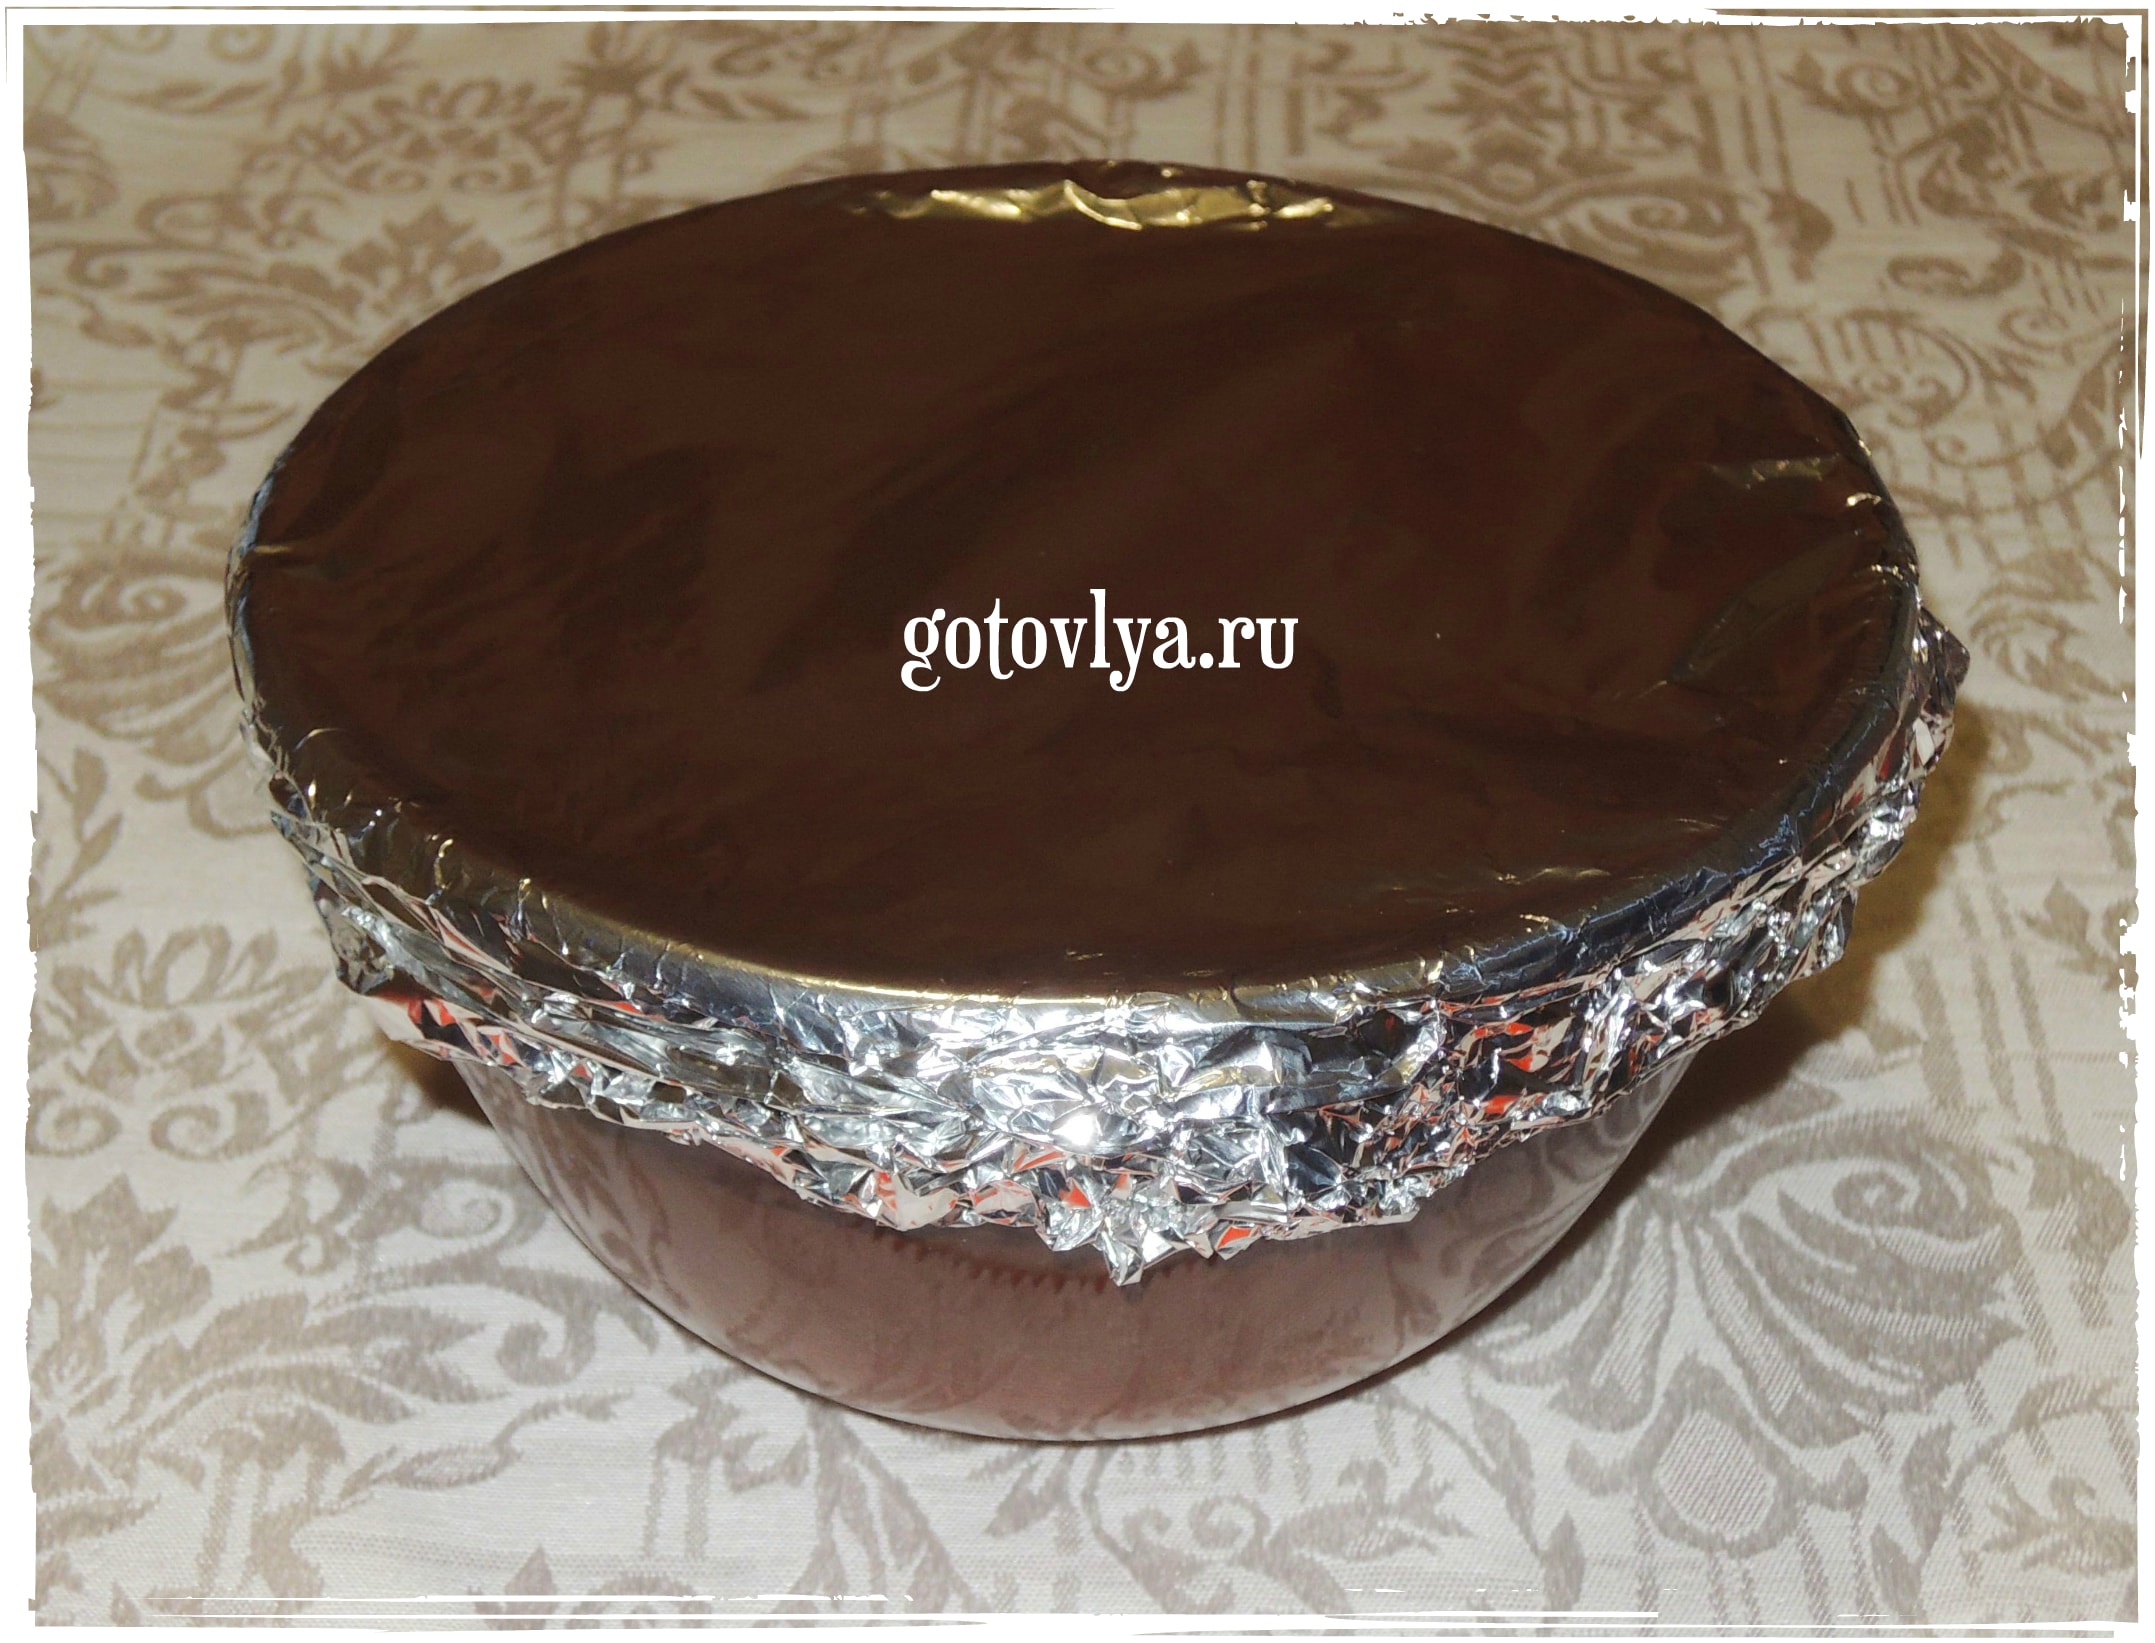 Рецепт шоколадного крема для торта с фото 2